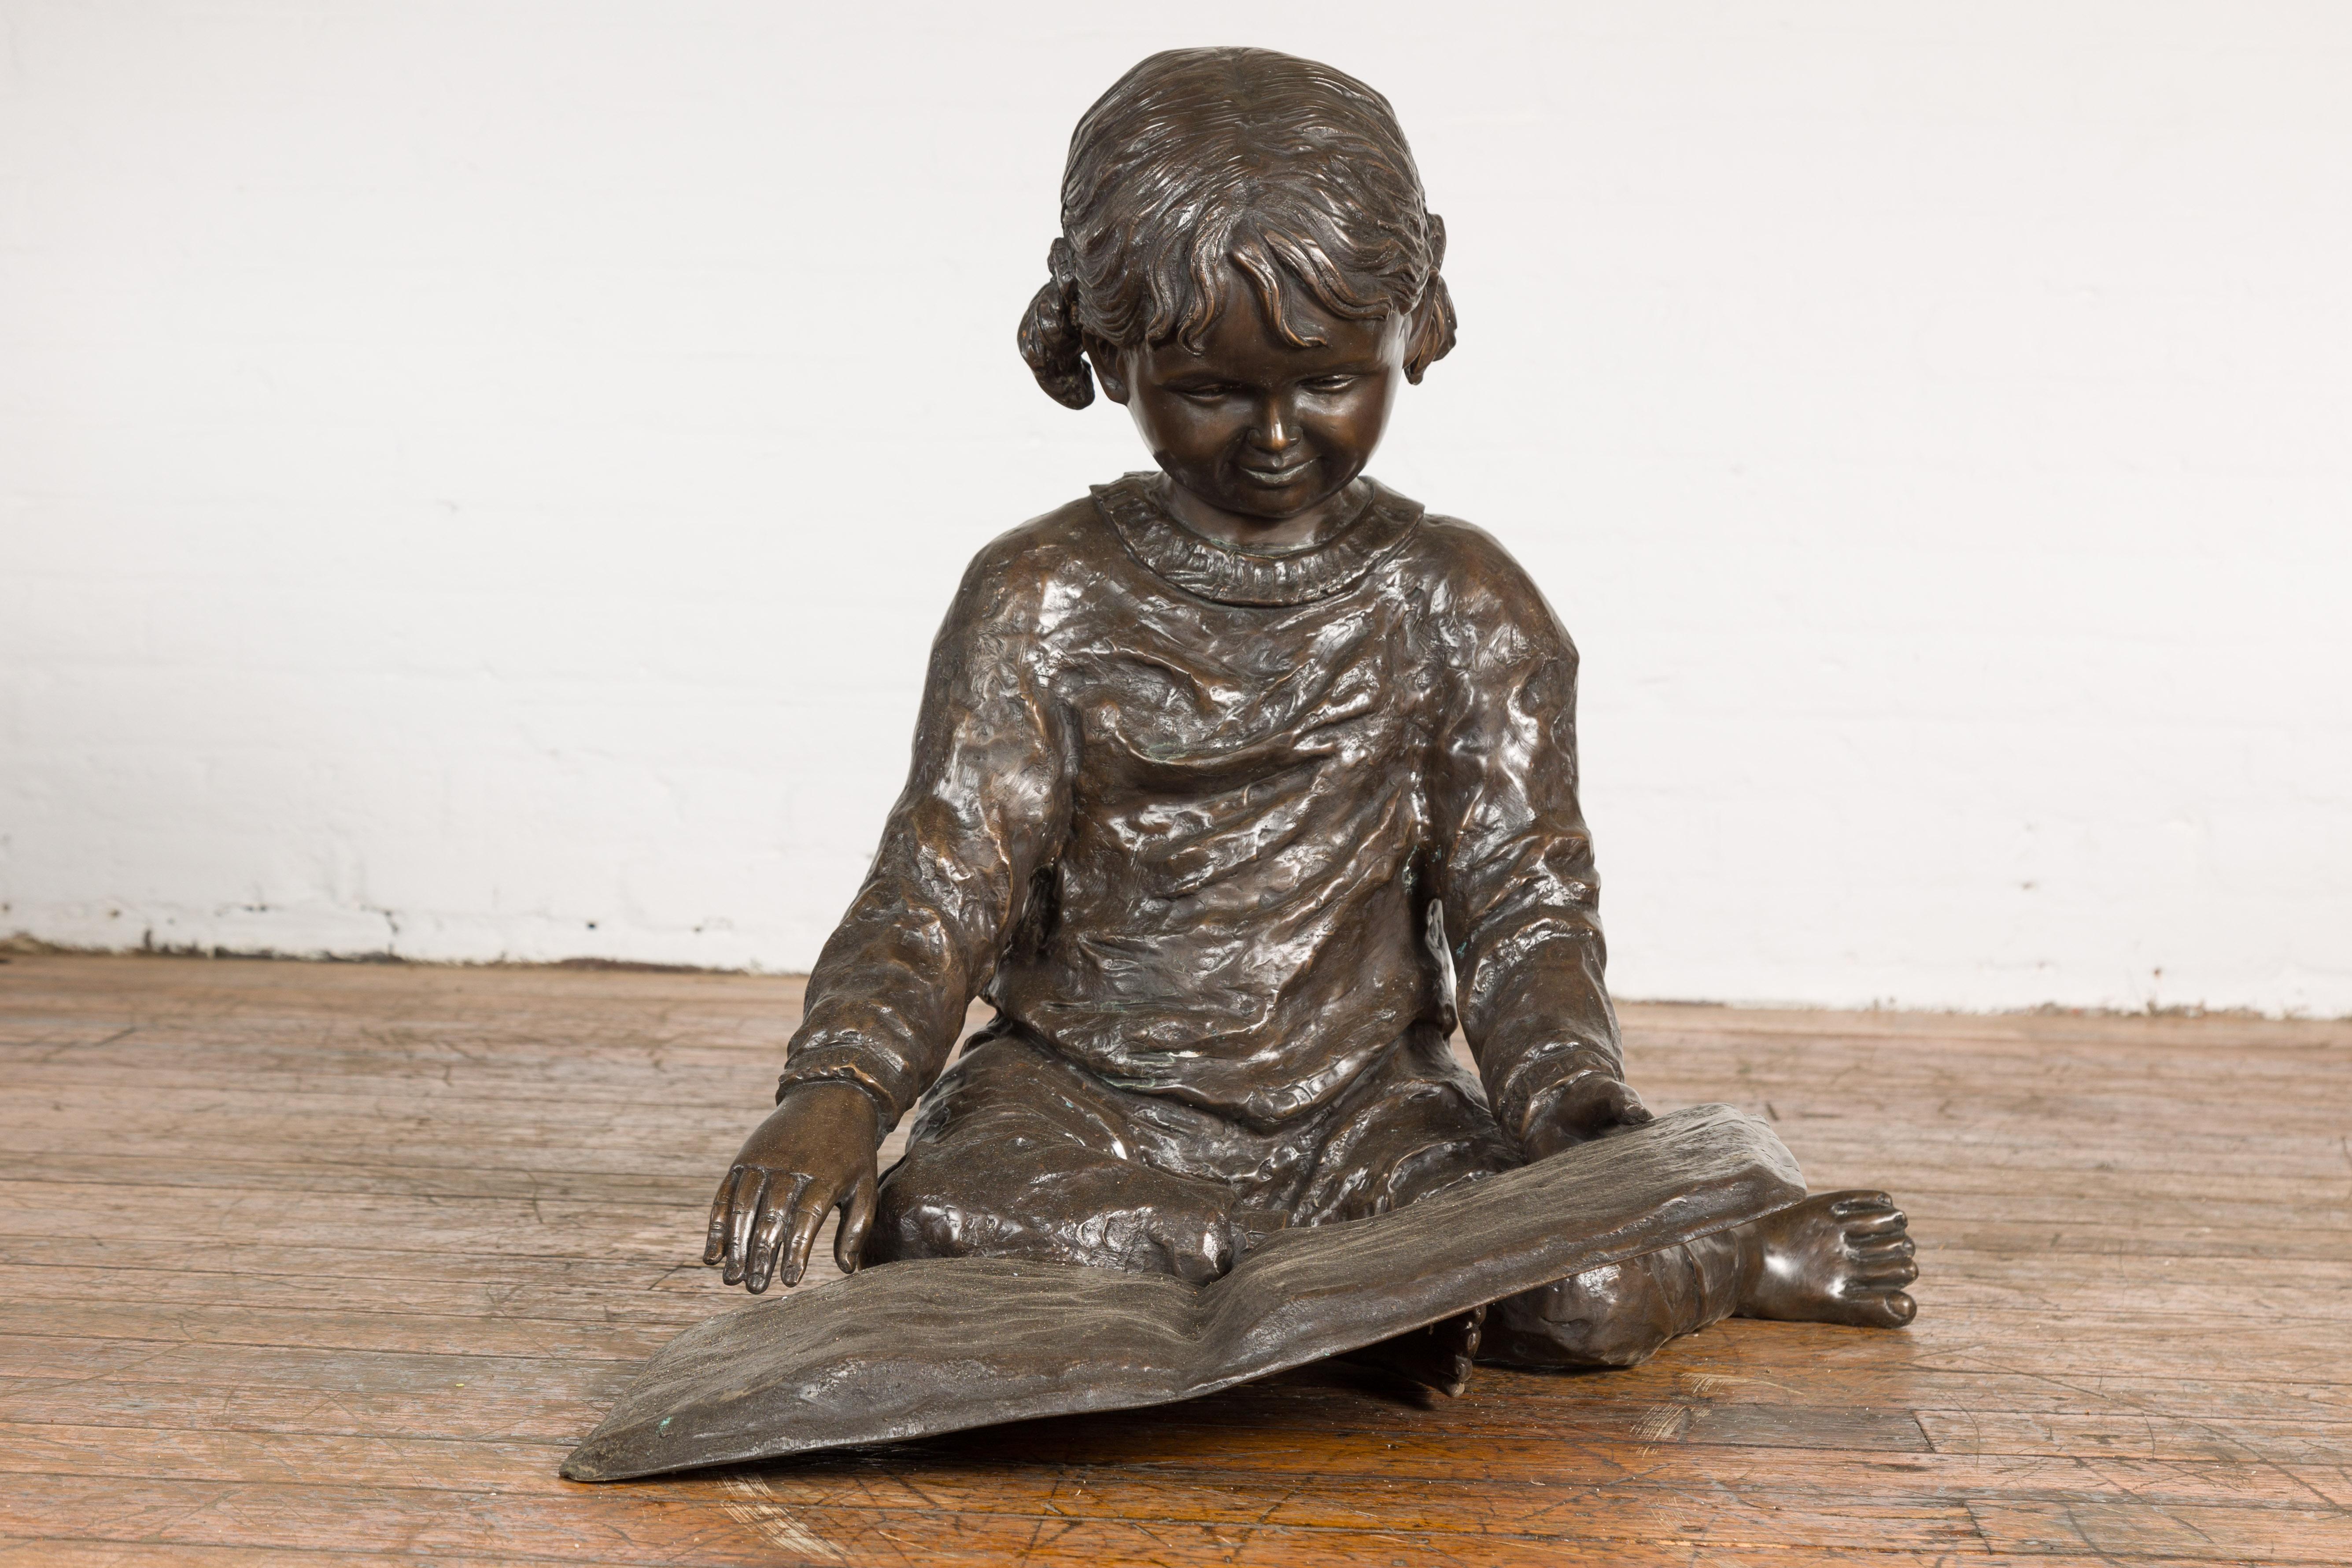 Eine im Wachsausschmelzverfahren gegossene Bronzestatue mit dem Titel Nursery Rhymes (Kinderreime), die ein kleines Mädchen darstellt, das auf dem Boden sitzt und ein Buch liest. Tauchen Sie ein in die bezaubernde Welt der Kindheit mit der 